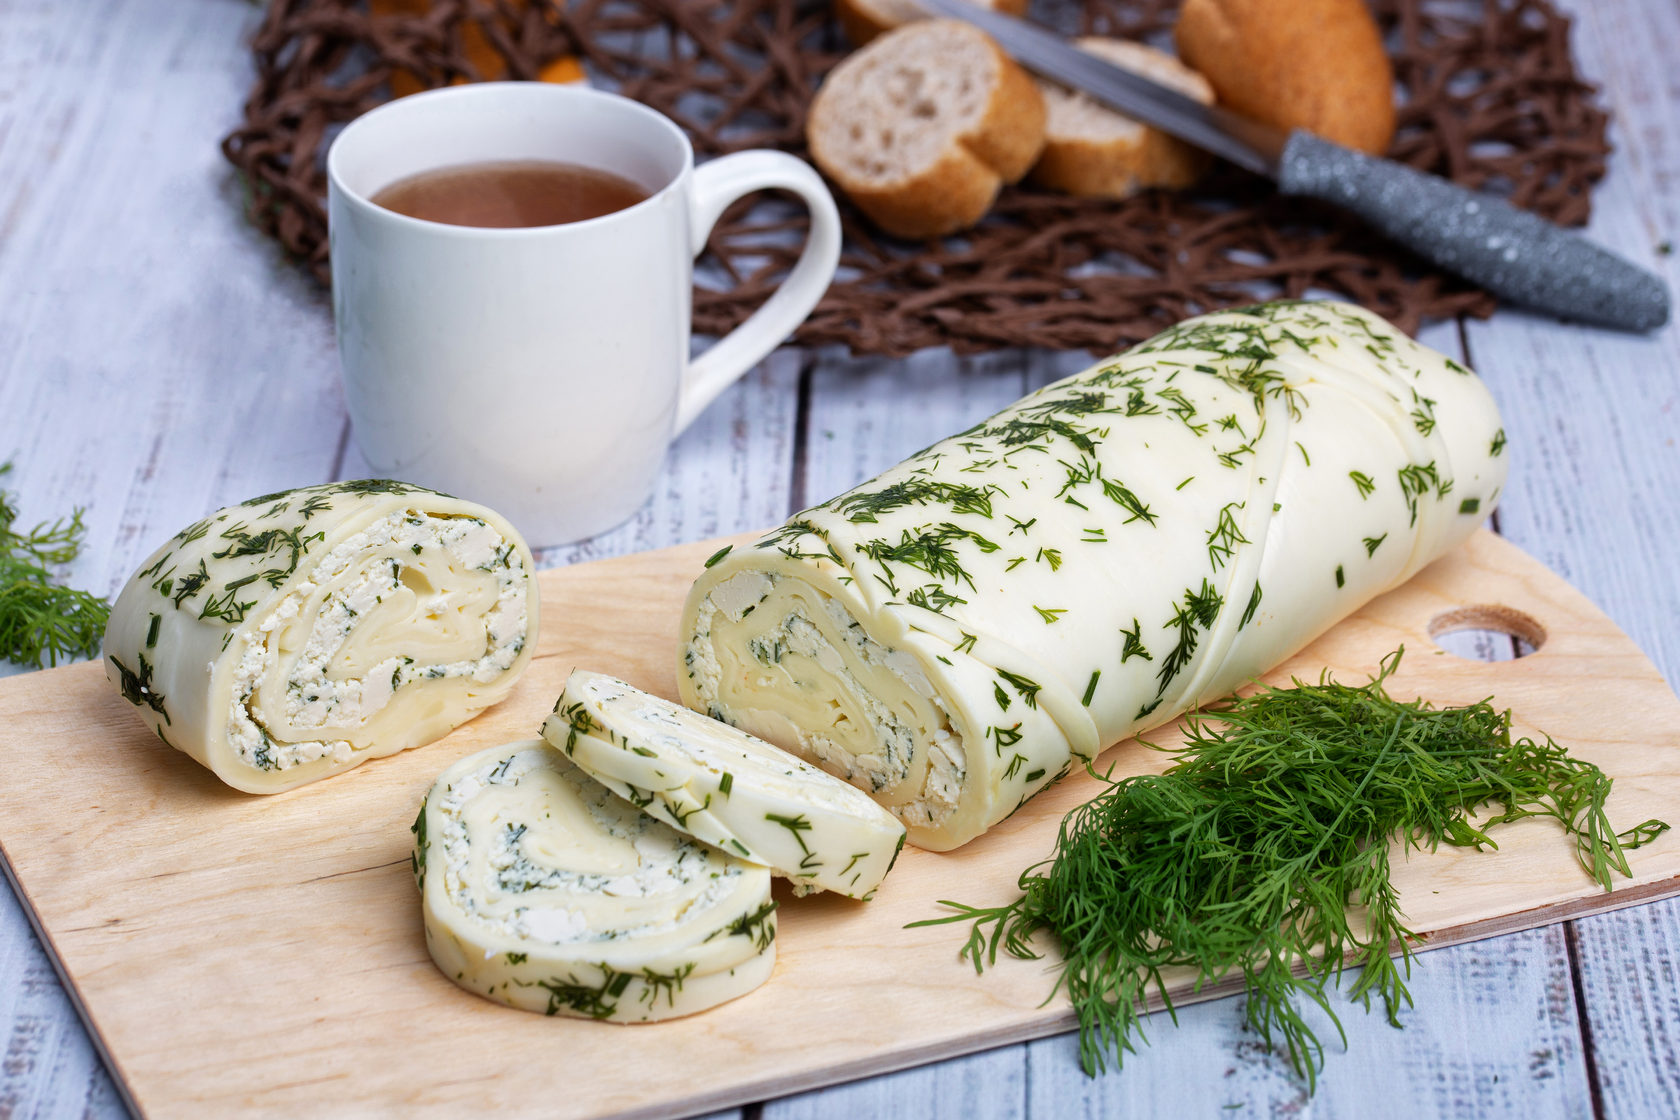 Сыр с зеленью: какие нарушения выявлены при экспертизе